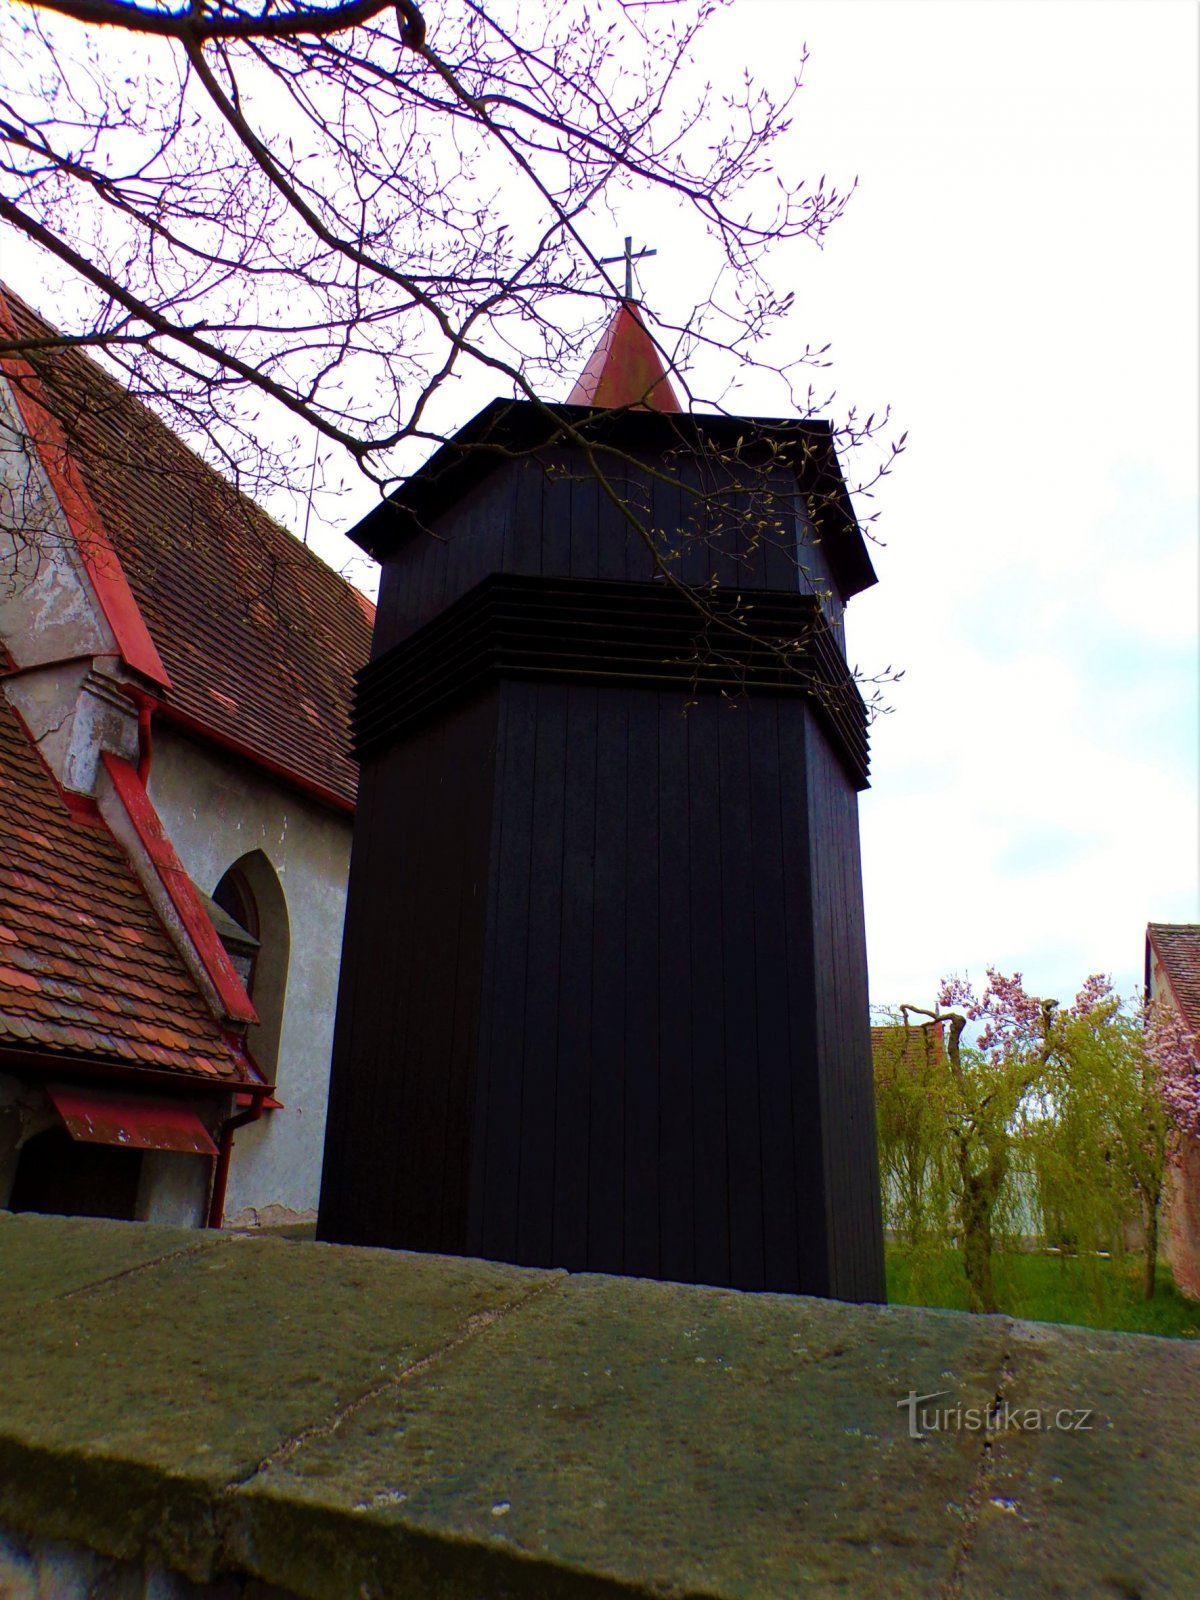 Zvonik pri cerkvi sv. Václava v Rosicah nad Labem (Pardubice, 22.4.2022. april XNUMX)